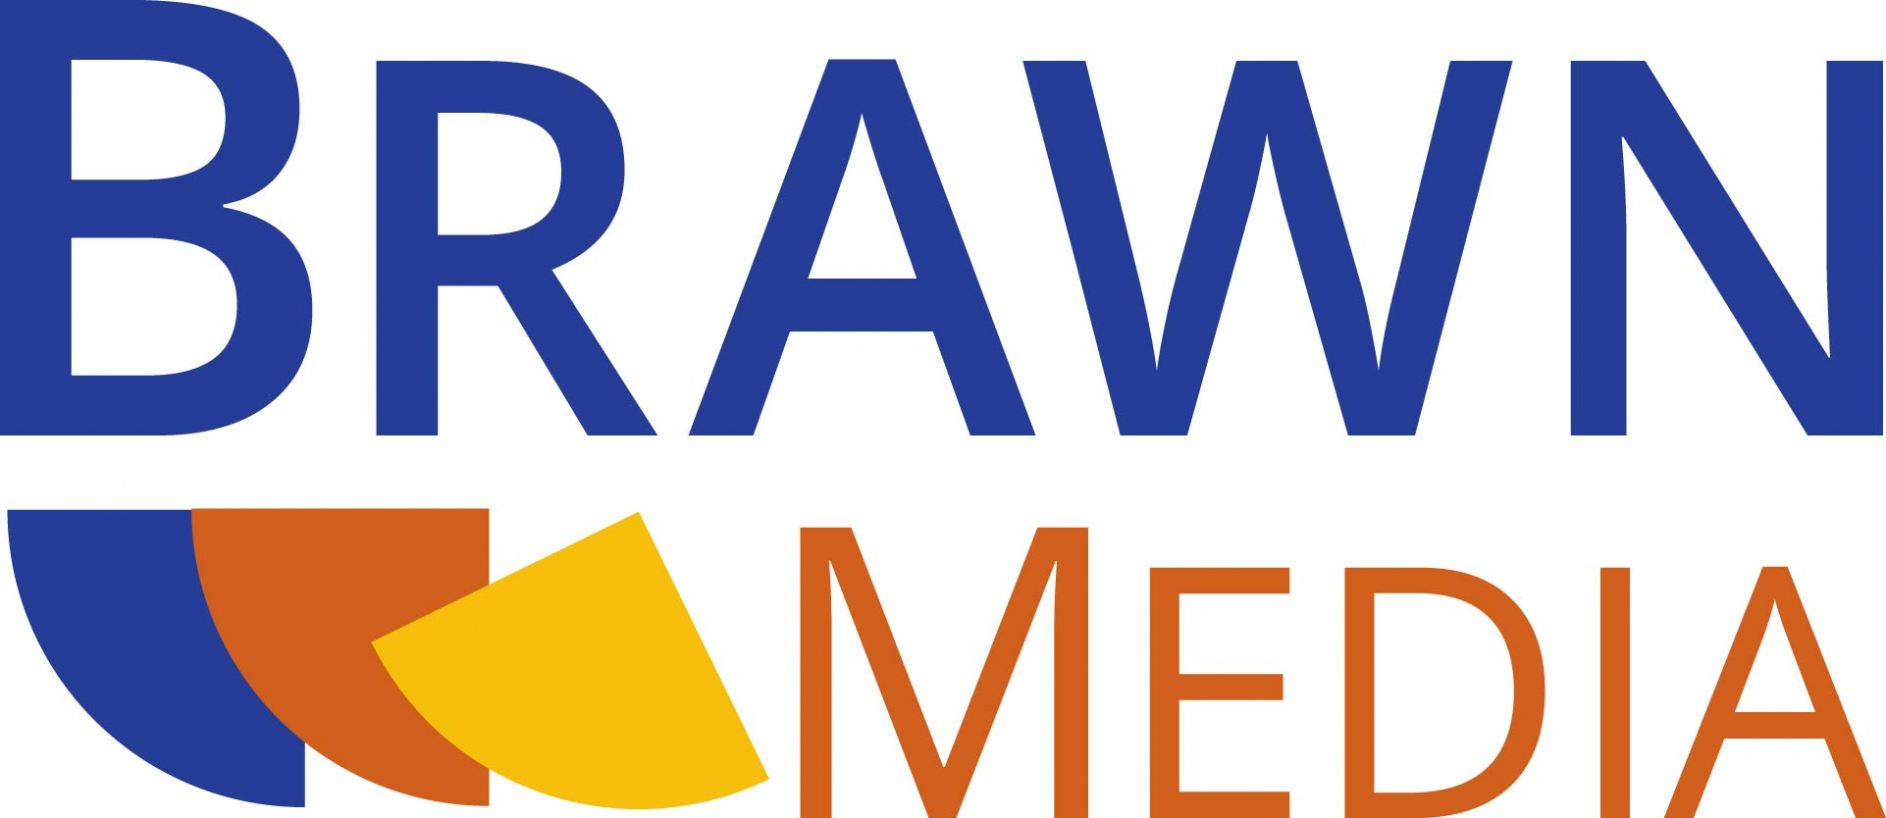 Brawn Media Logo